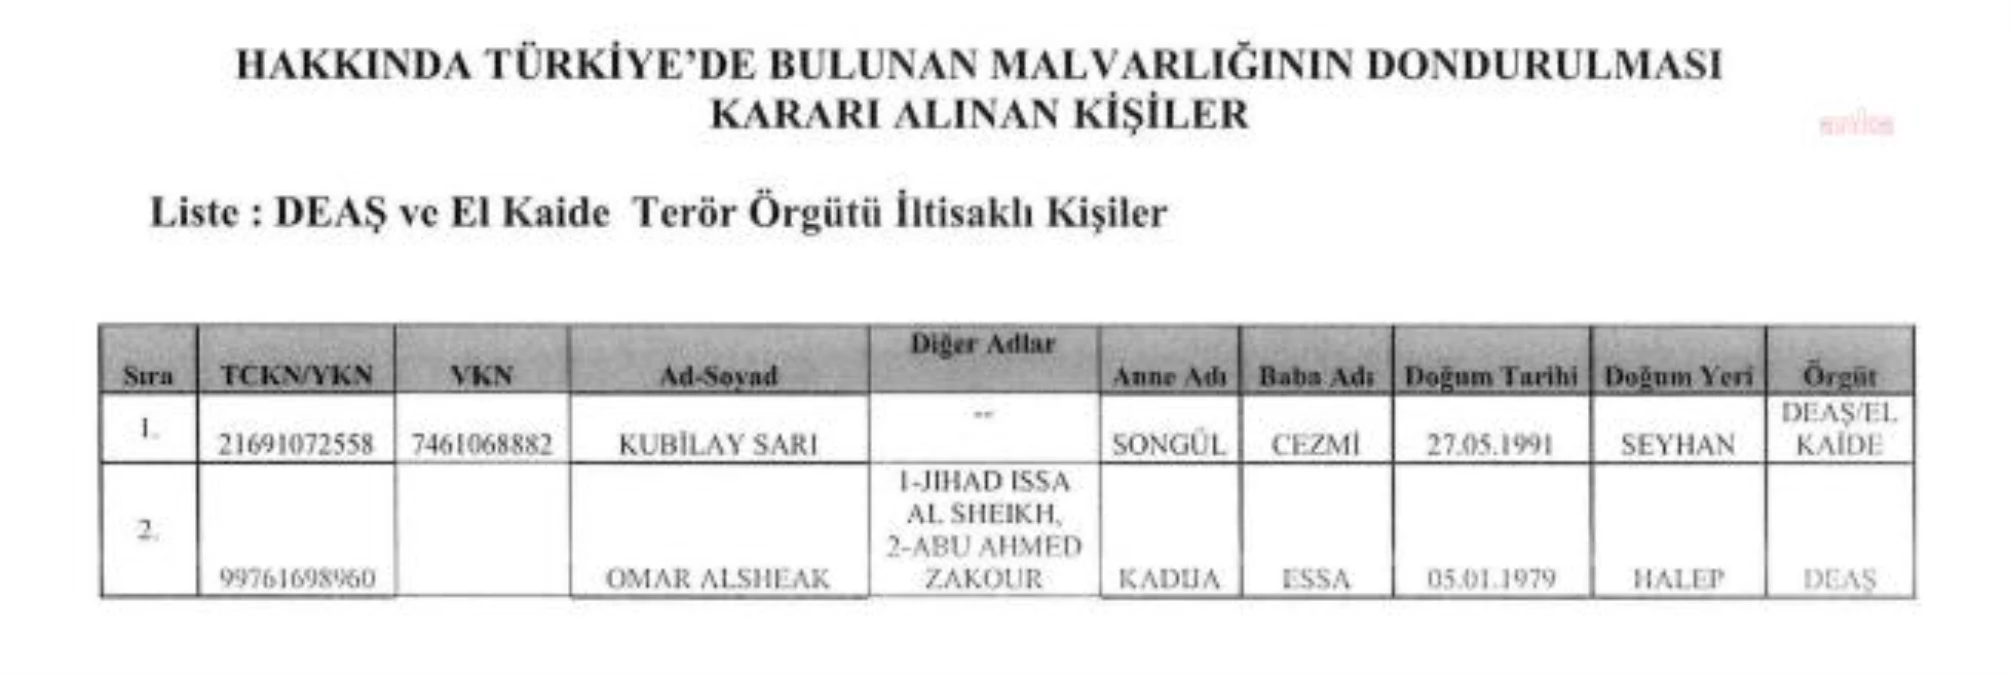 Kubilay Sarı ve Omar Alsheak'ın Türkiye'deki malvarlıkları terör örgütleri ile kontaklı olduğu gerekçesiyle donduruldu